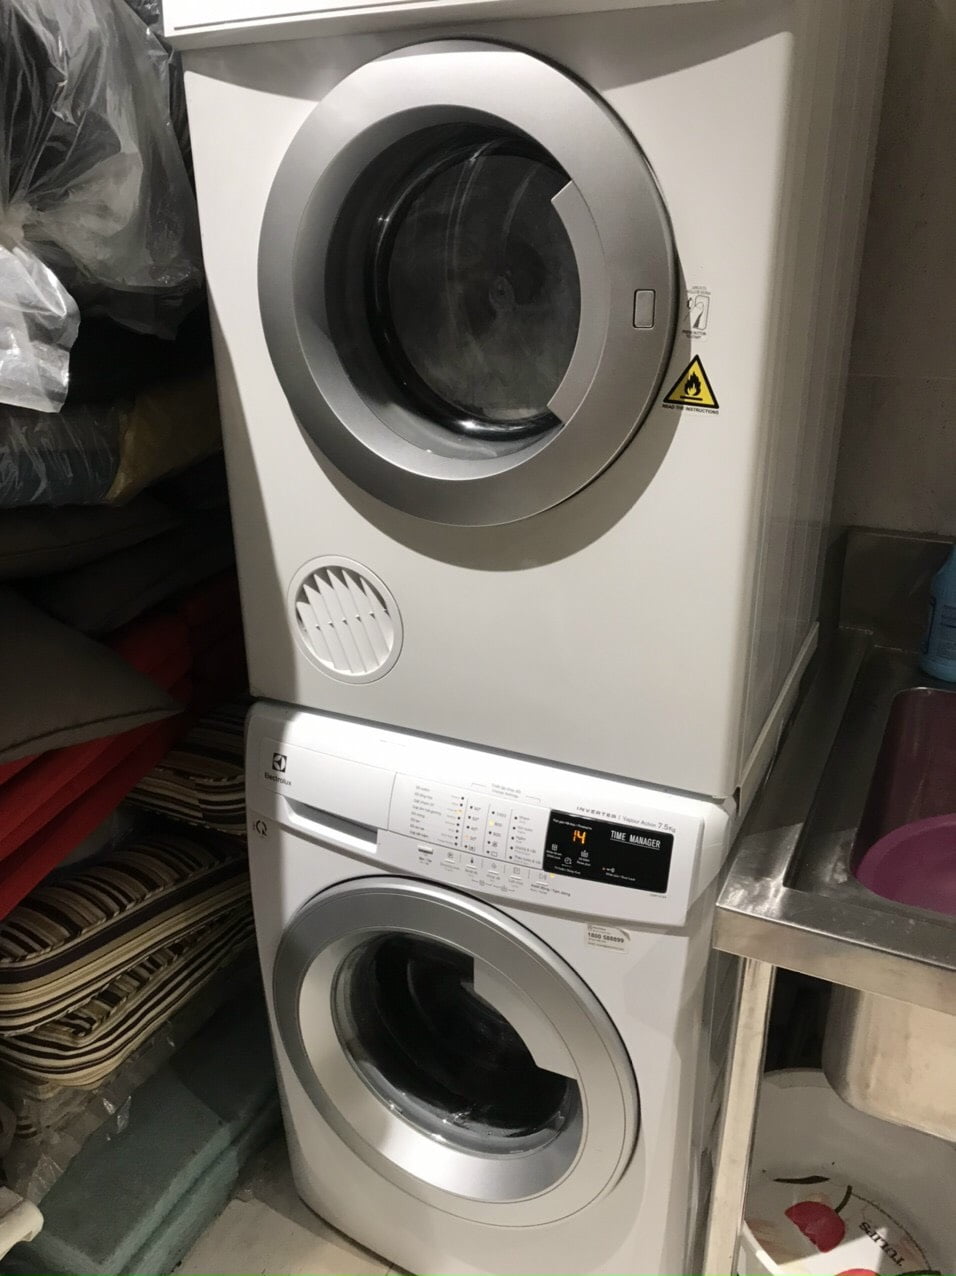 dich vu bao duong may giat 6 - #1 Dịch vụ vệ sinh máy giặt tại nhà giá tốt, chuyên nghiệp, uy tín